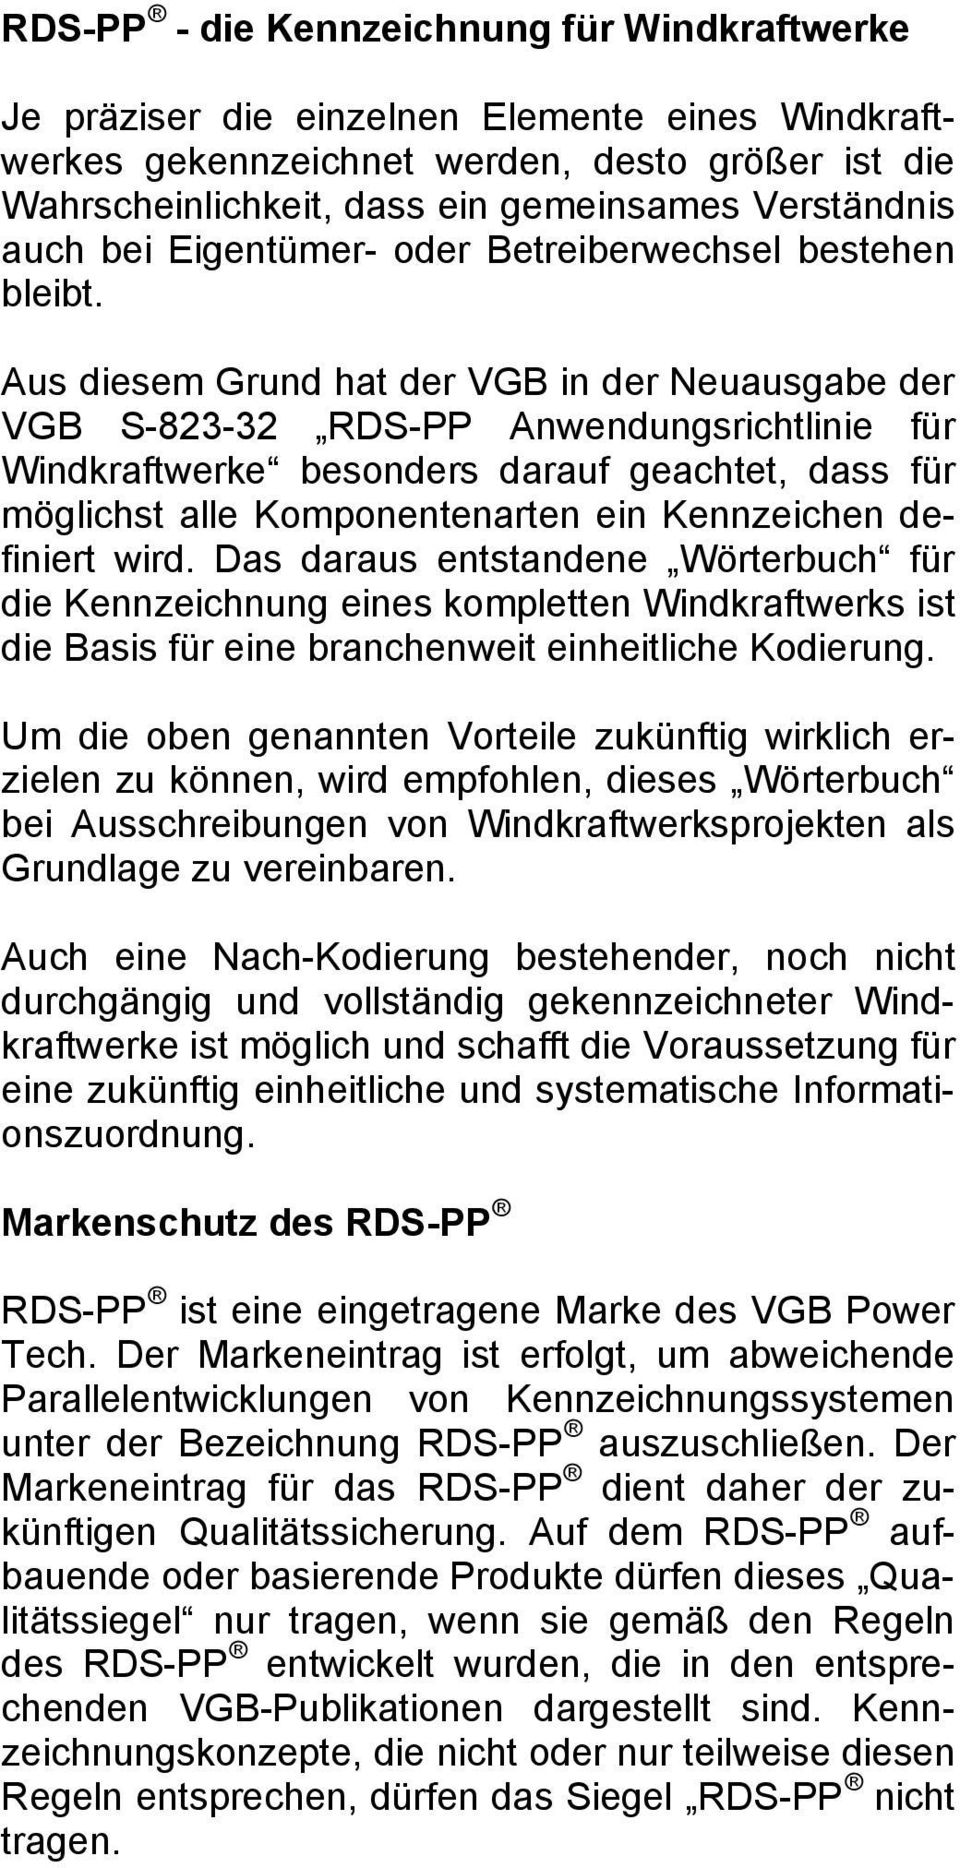 Aus diesem Grund hat der VGB in der Neuausgabe der VGB S-823-32 RDS-PP Anwendungsrichtlinie für Windkraftwerke besonders darauf geachtet, dass für möglichst alle Komponentenarten ein Kennzeichen